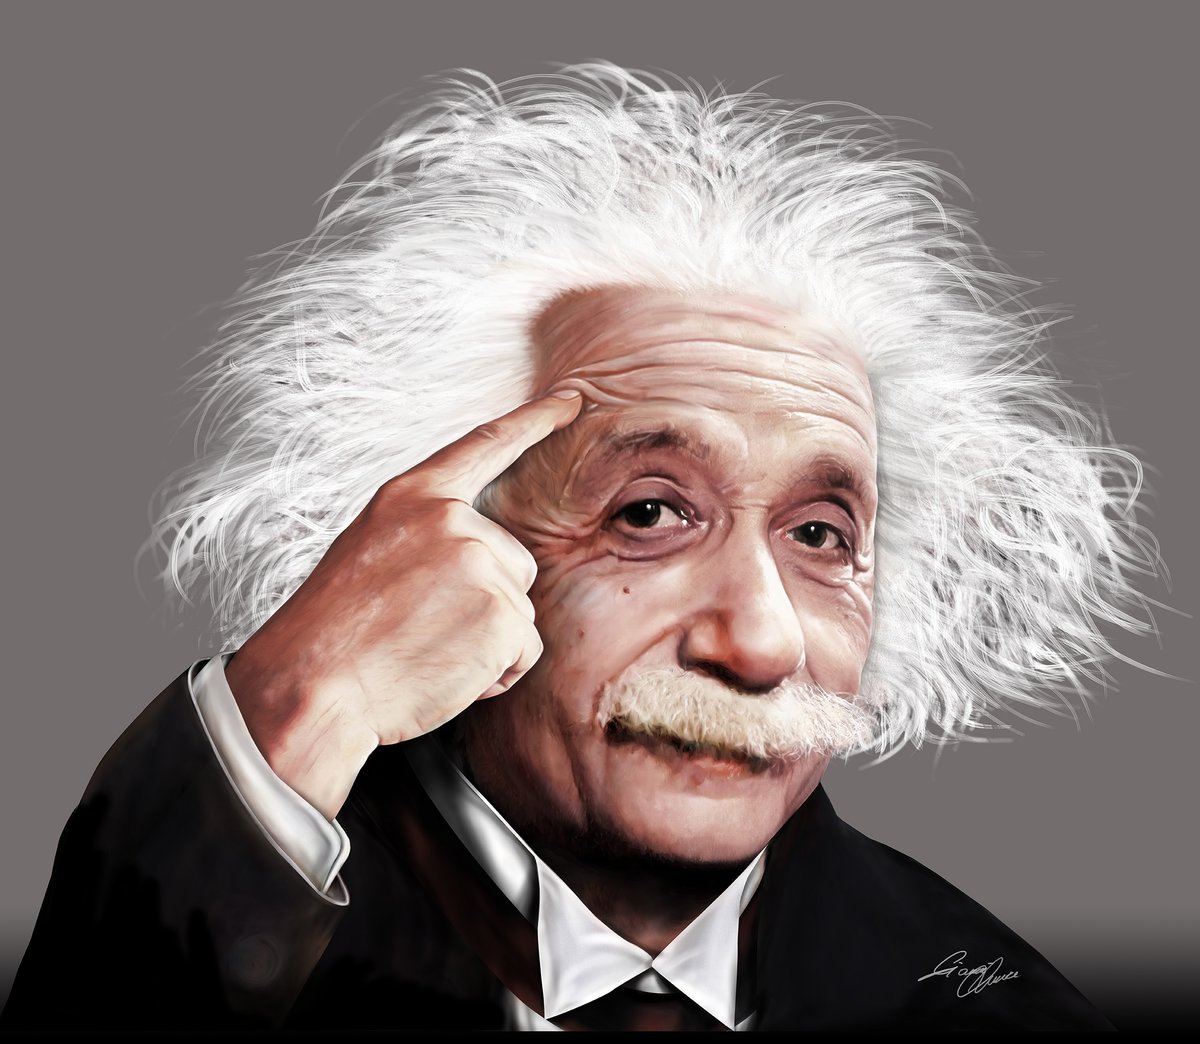 Эйнштейн физик